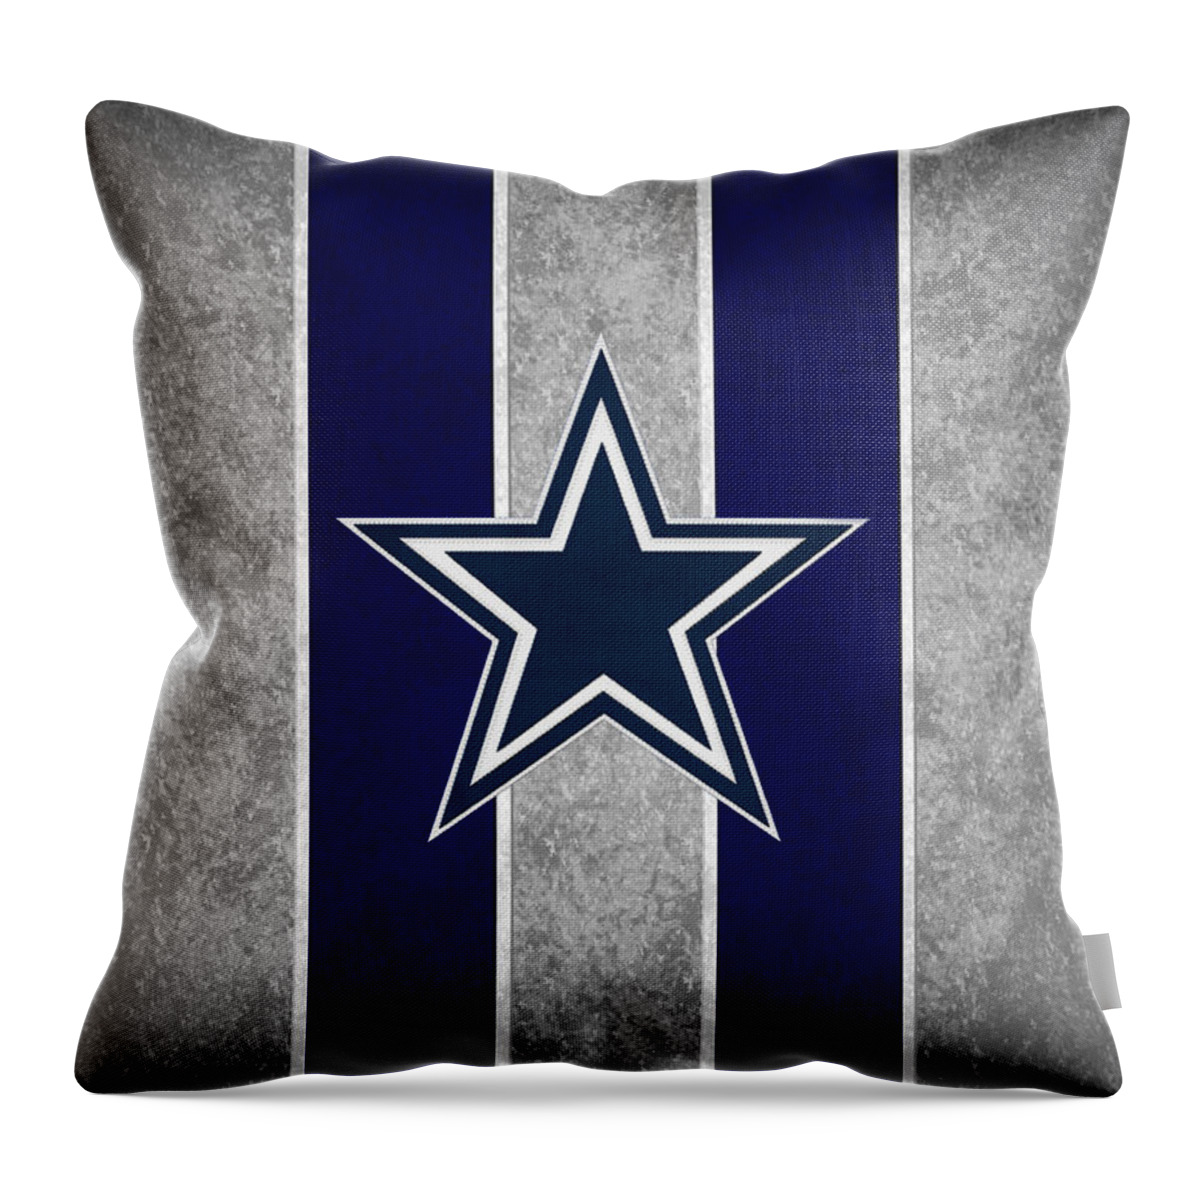 Cowboys Throw Pillow featuring the photograph Dallas Cowboys by Joe Hamilton